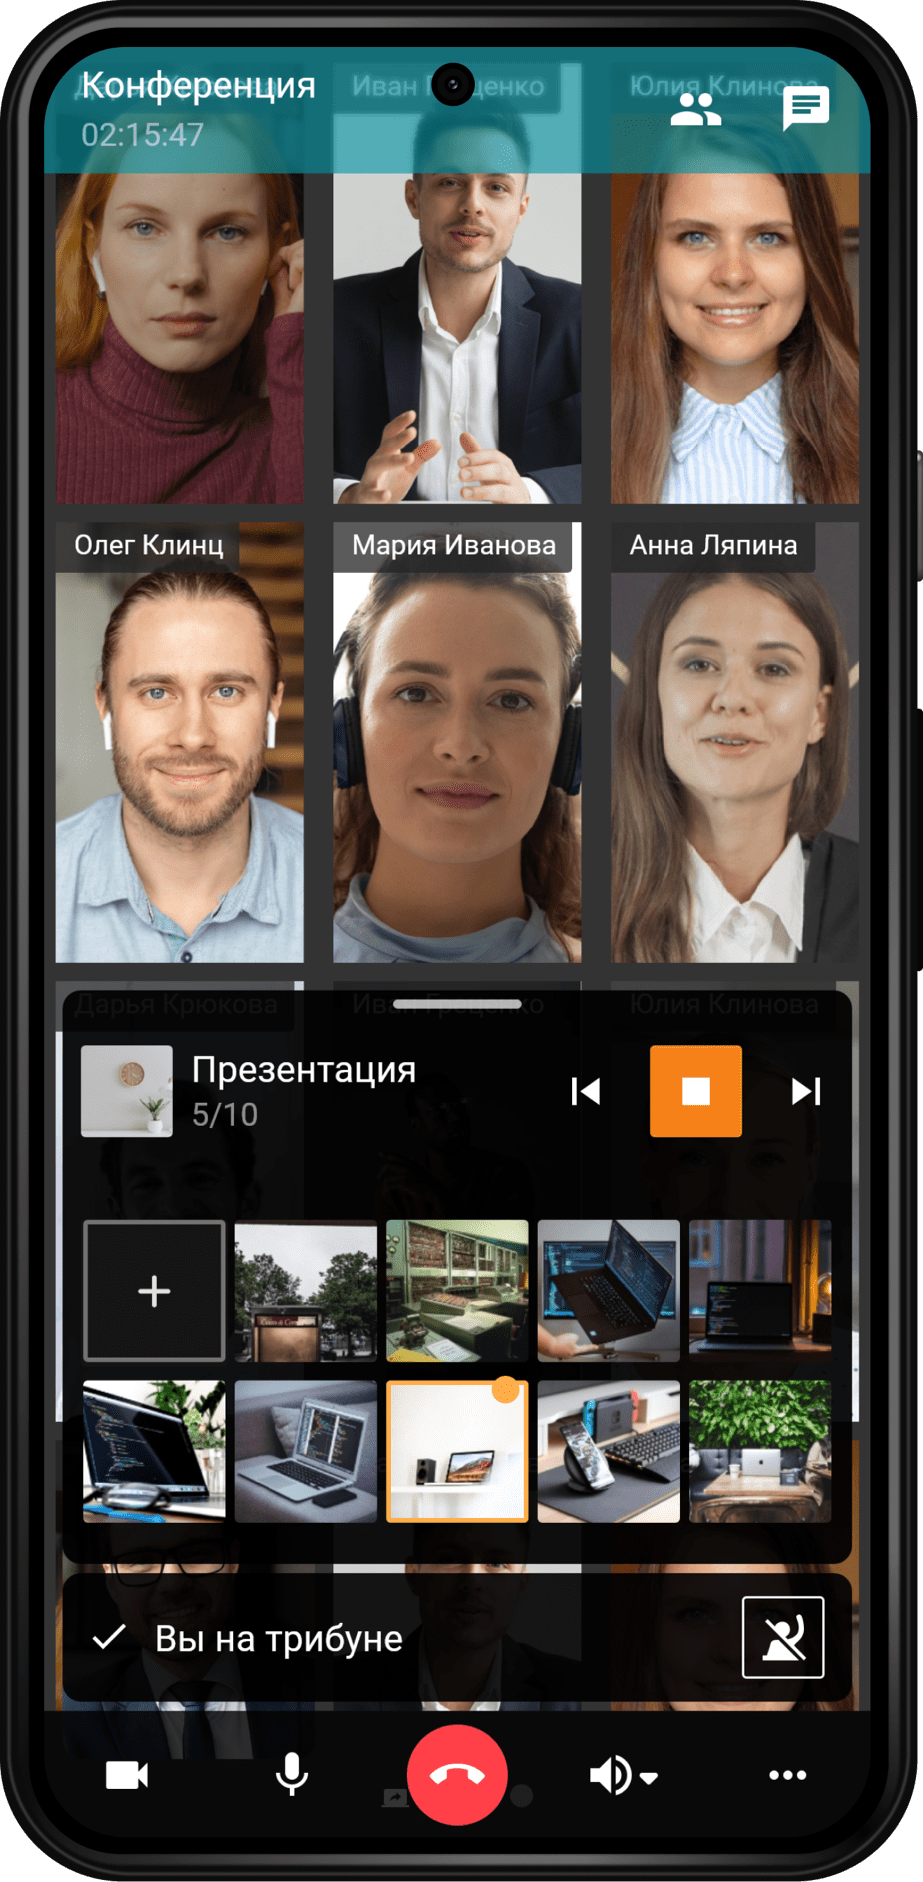 TrueConf 2.0 для Android: видеосвязь и мессенджер в одном приложении 22